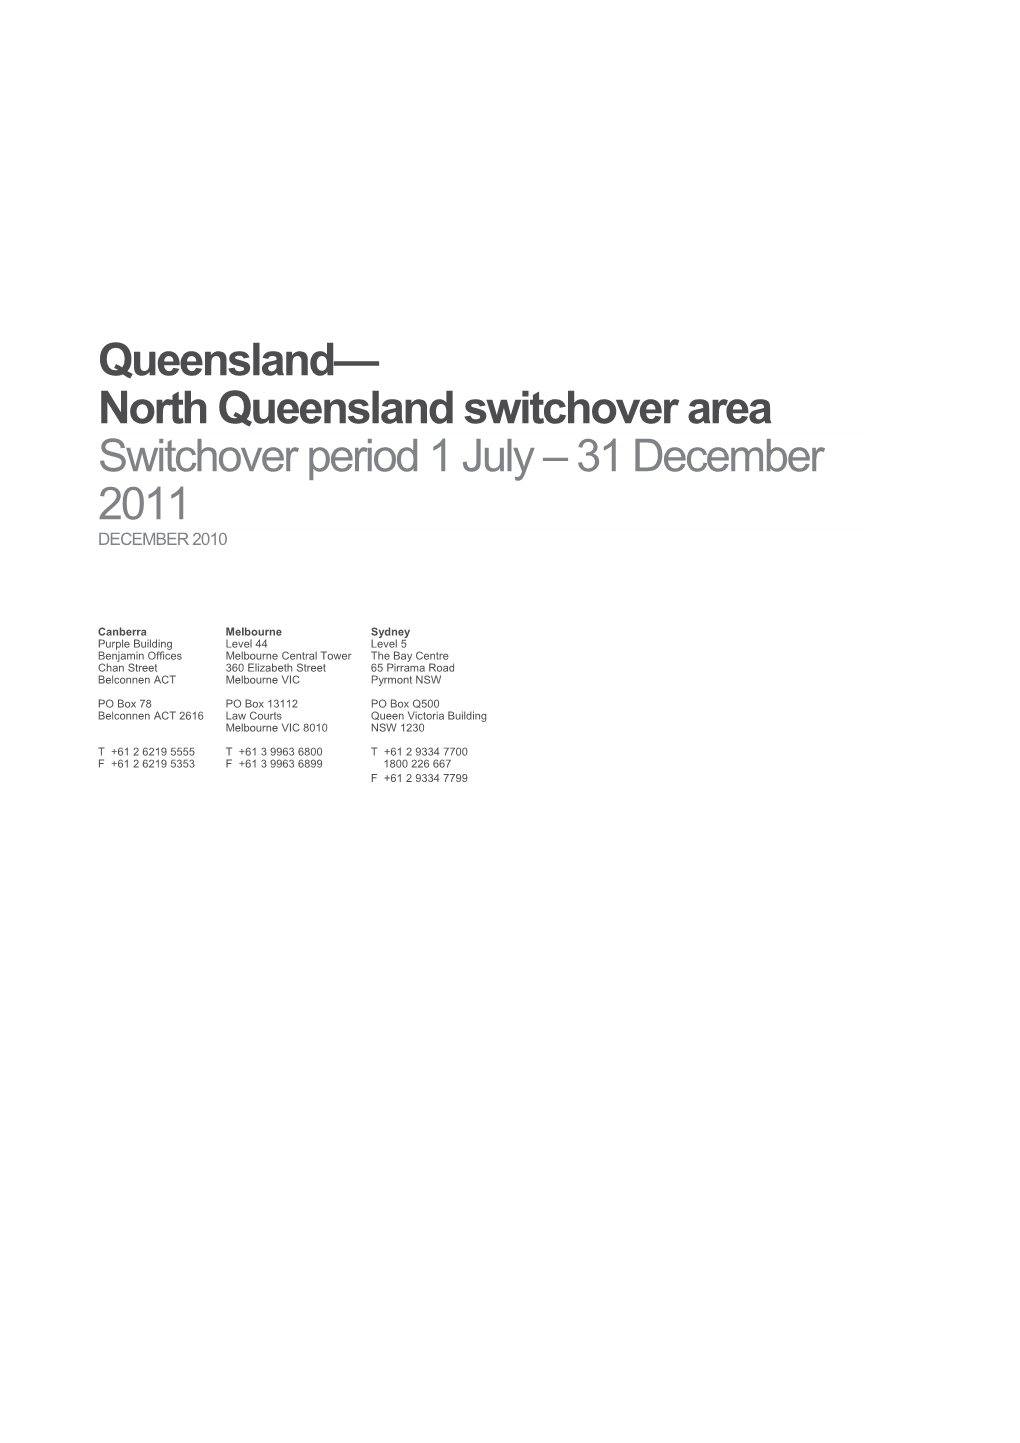 Queensland North Queensland Switchover Area